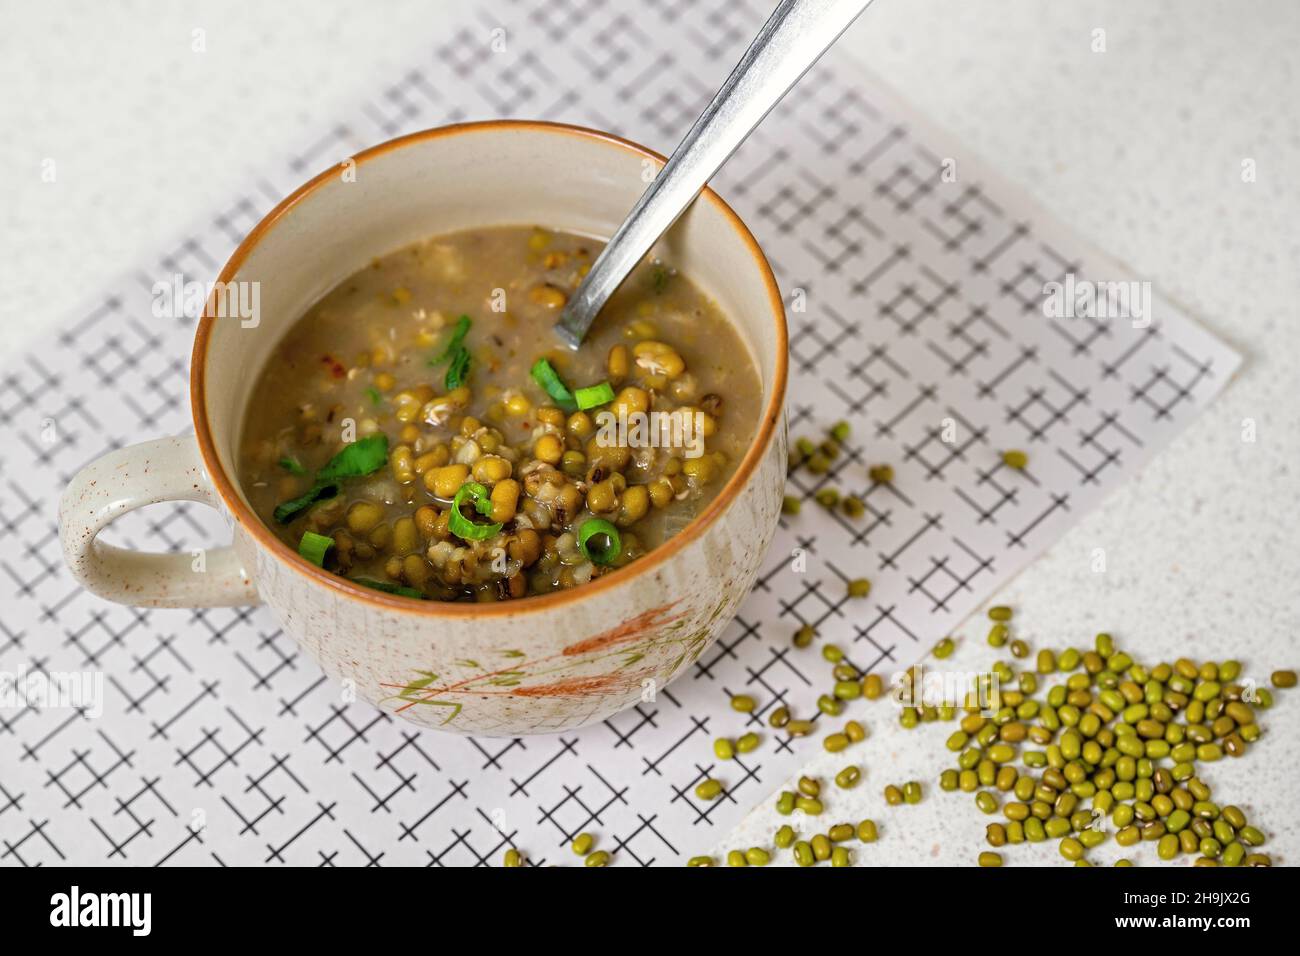 Soupe de haricots Mungo dans un bol avec une cuillère, sécher les graines de mungo (vigna radiata) sur la table. Banque D'Images